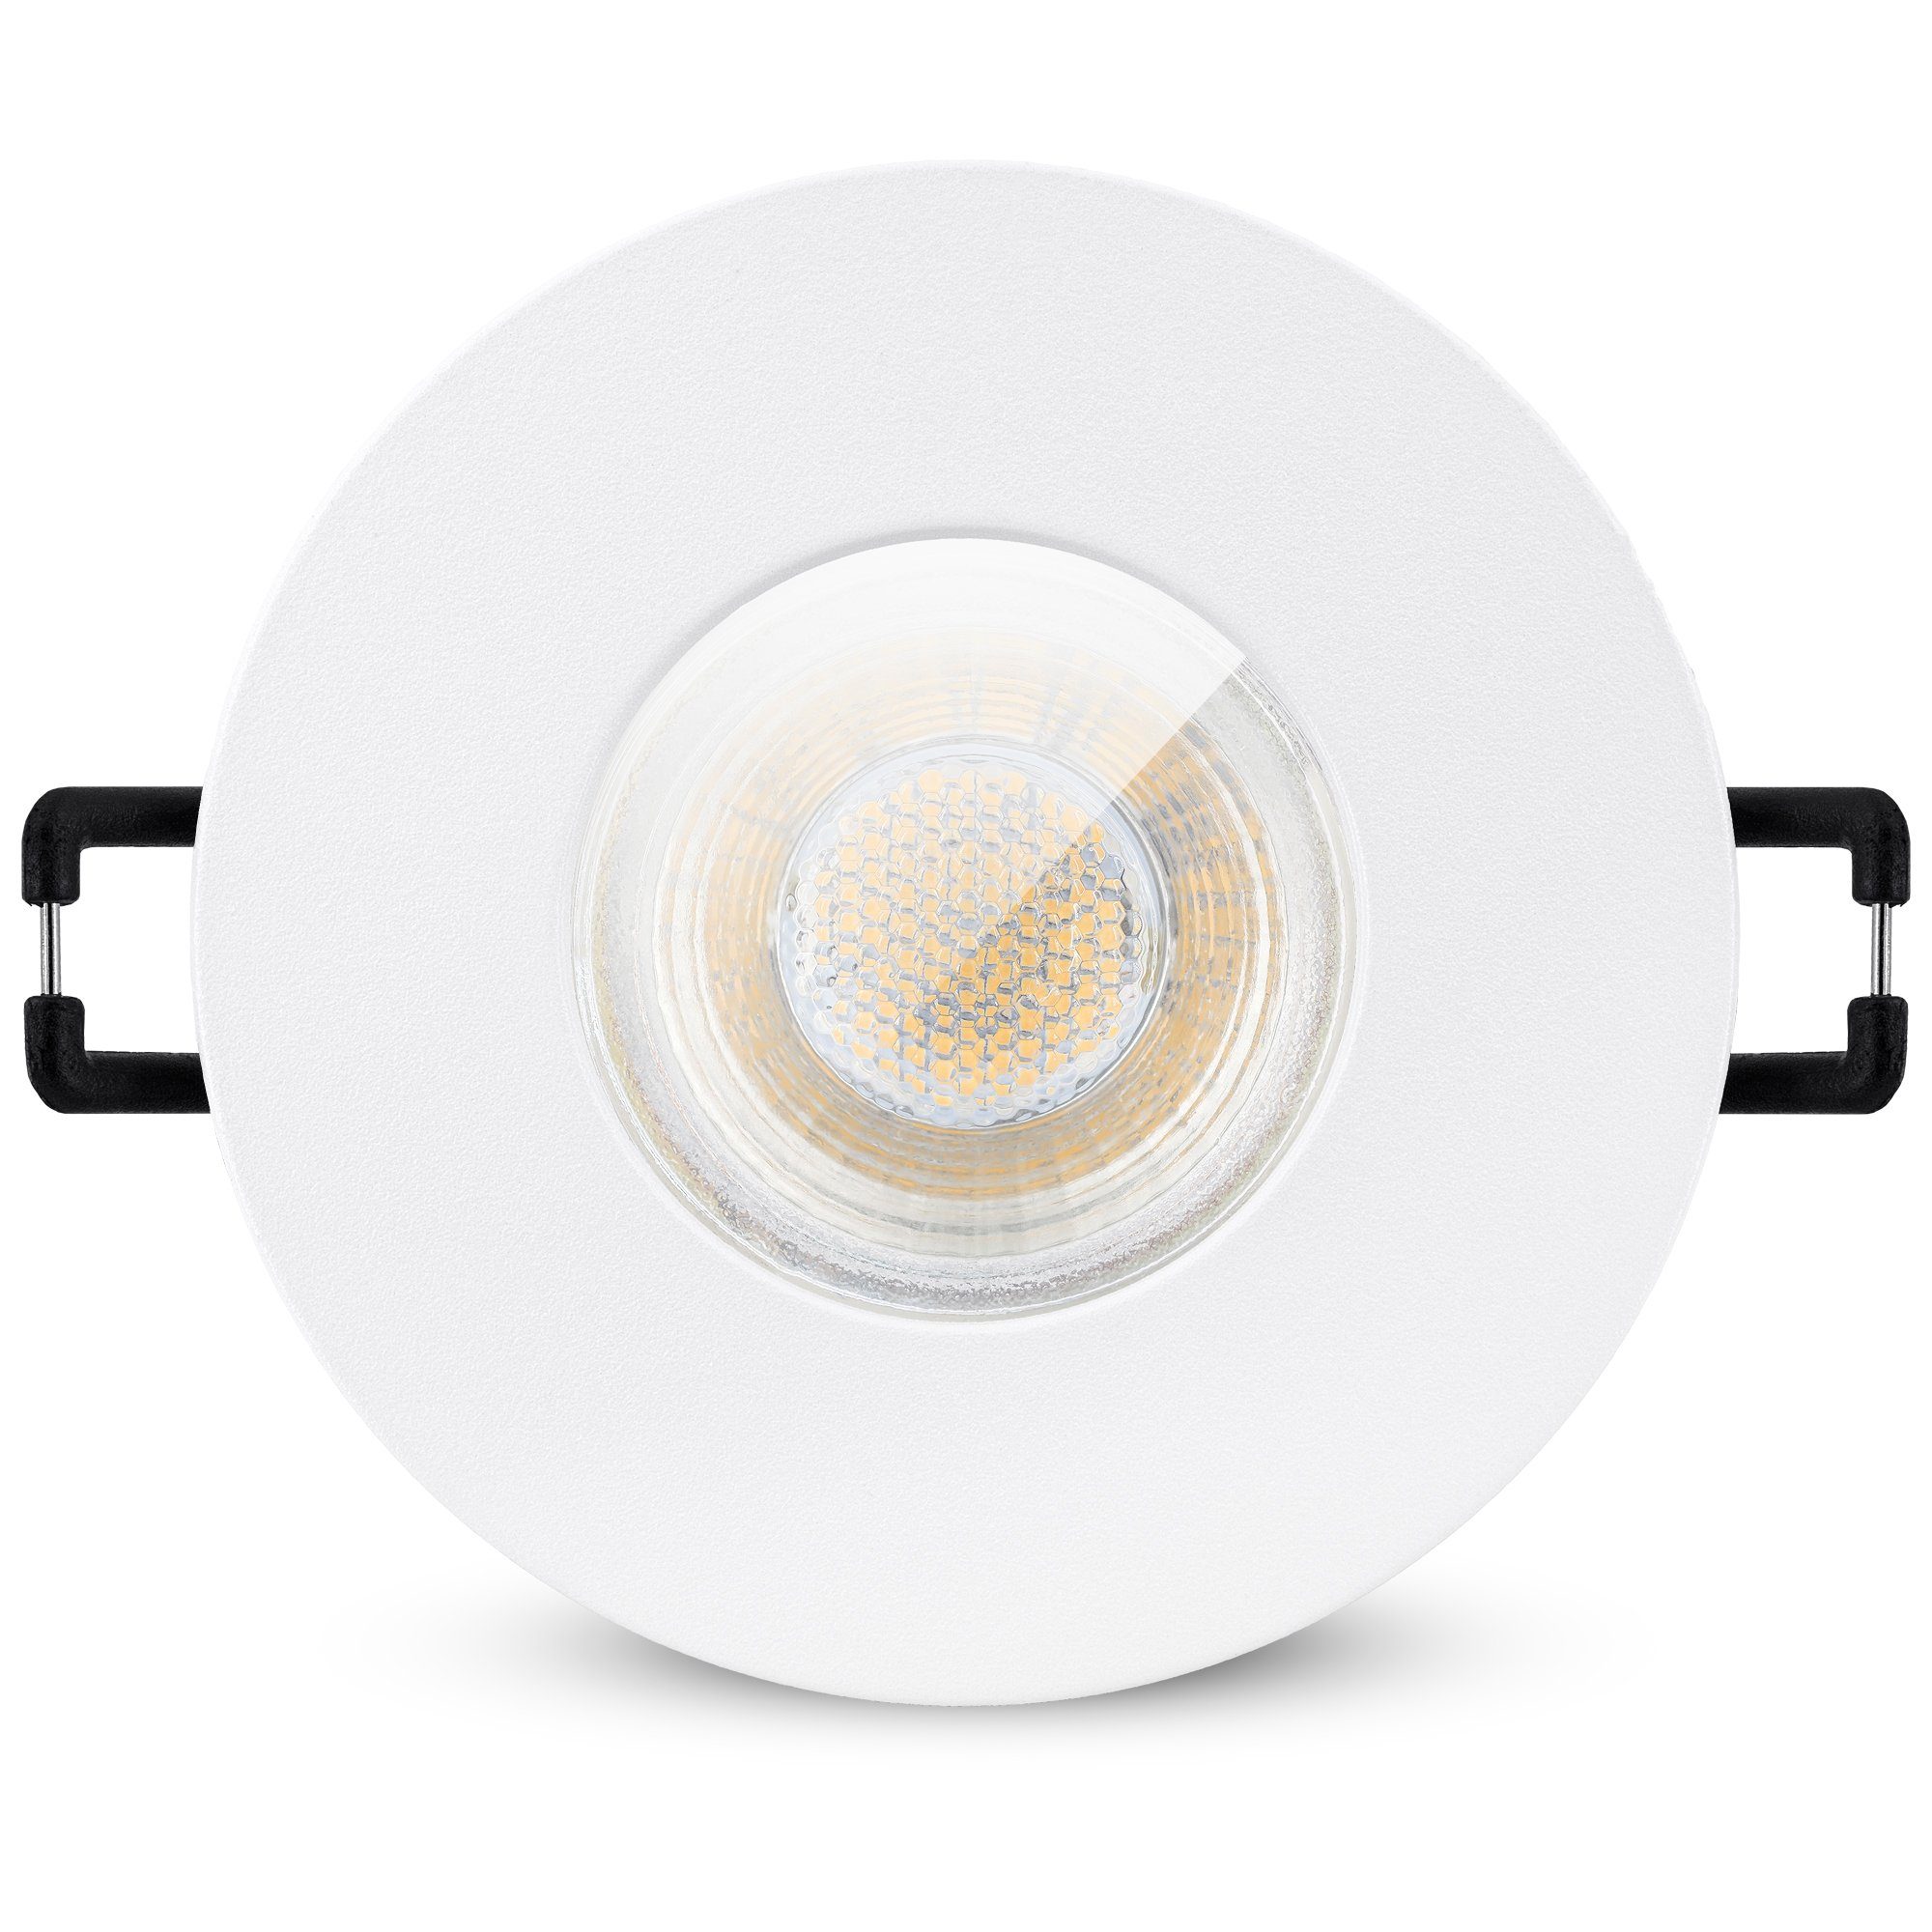 linovum LED Einbaustrahler »LED Einbaustrahler IP65 warmweiß GU10 3W 230V -  Einbauspot in matt weiß & rund«